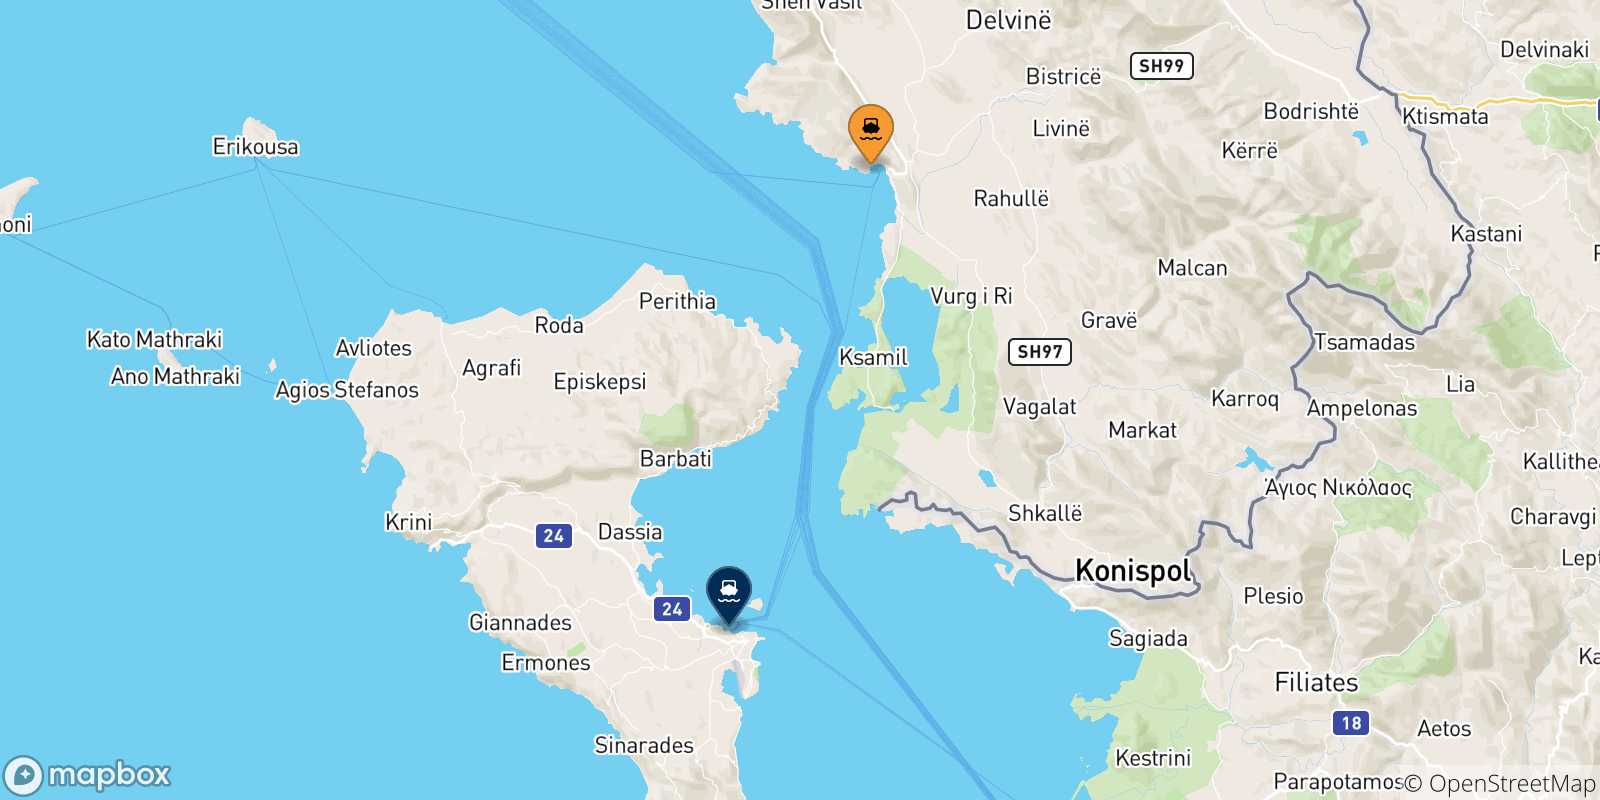 Mappa delle possibili rotte tra l'Albania e le Isole Ionie